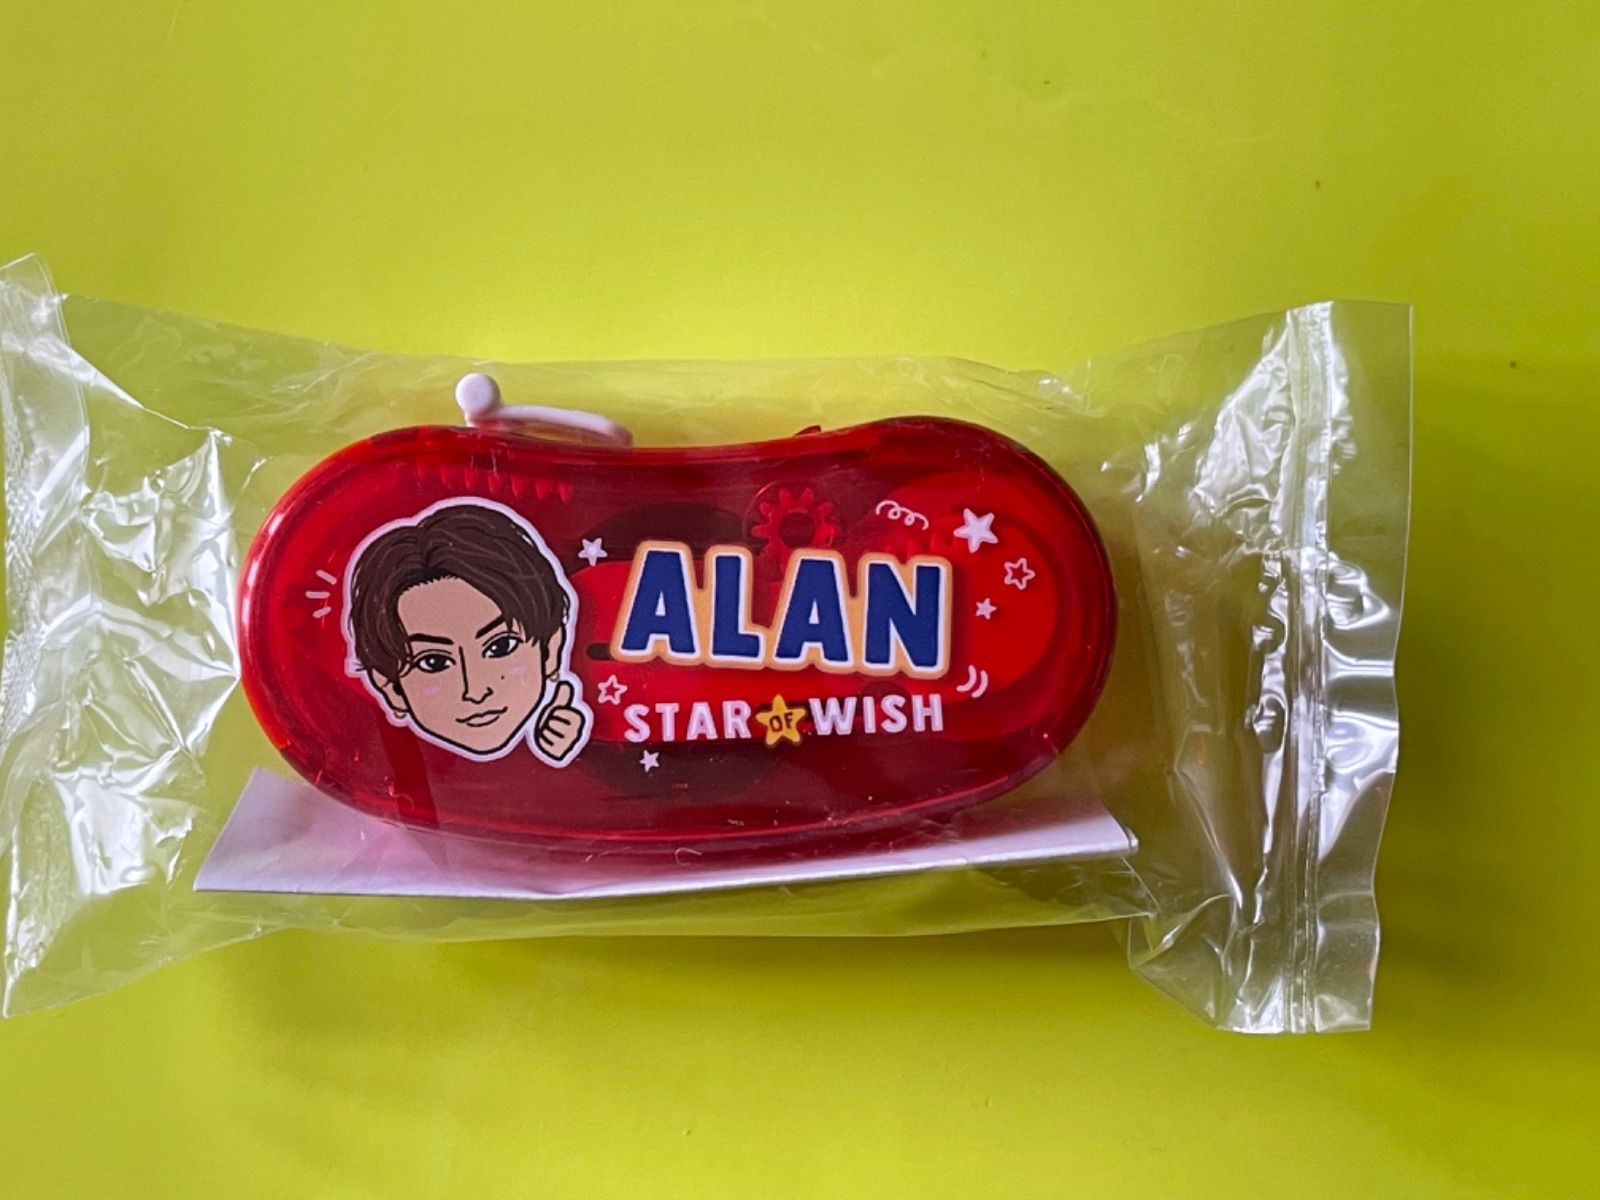 star of wishのタブレット缶 アラン